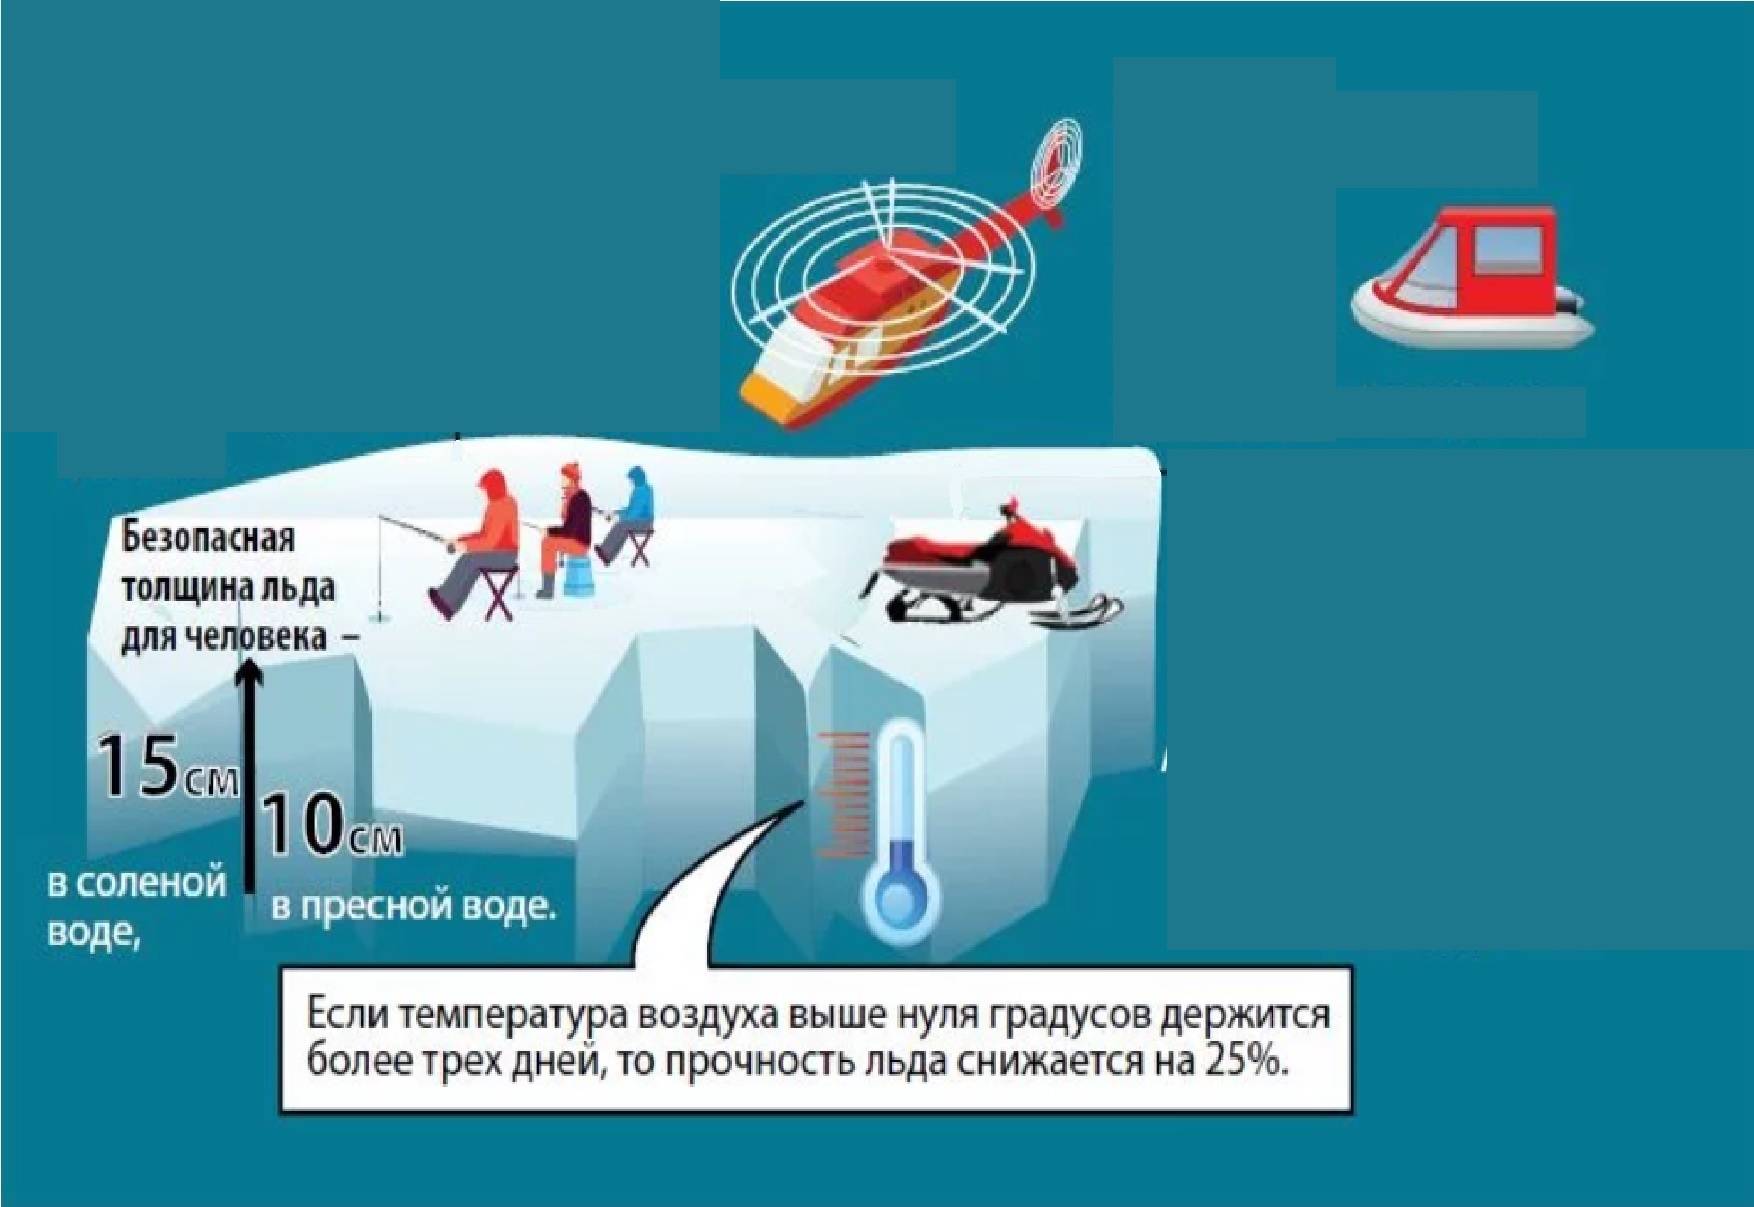 Безопасный лед на рыбалке: меры осторожности и поведение на льду